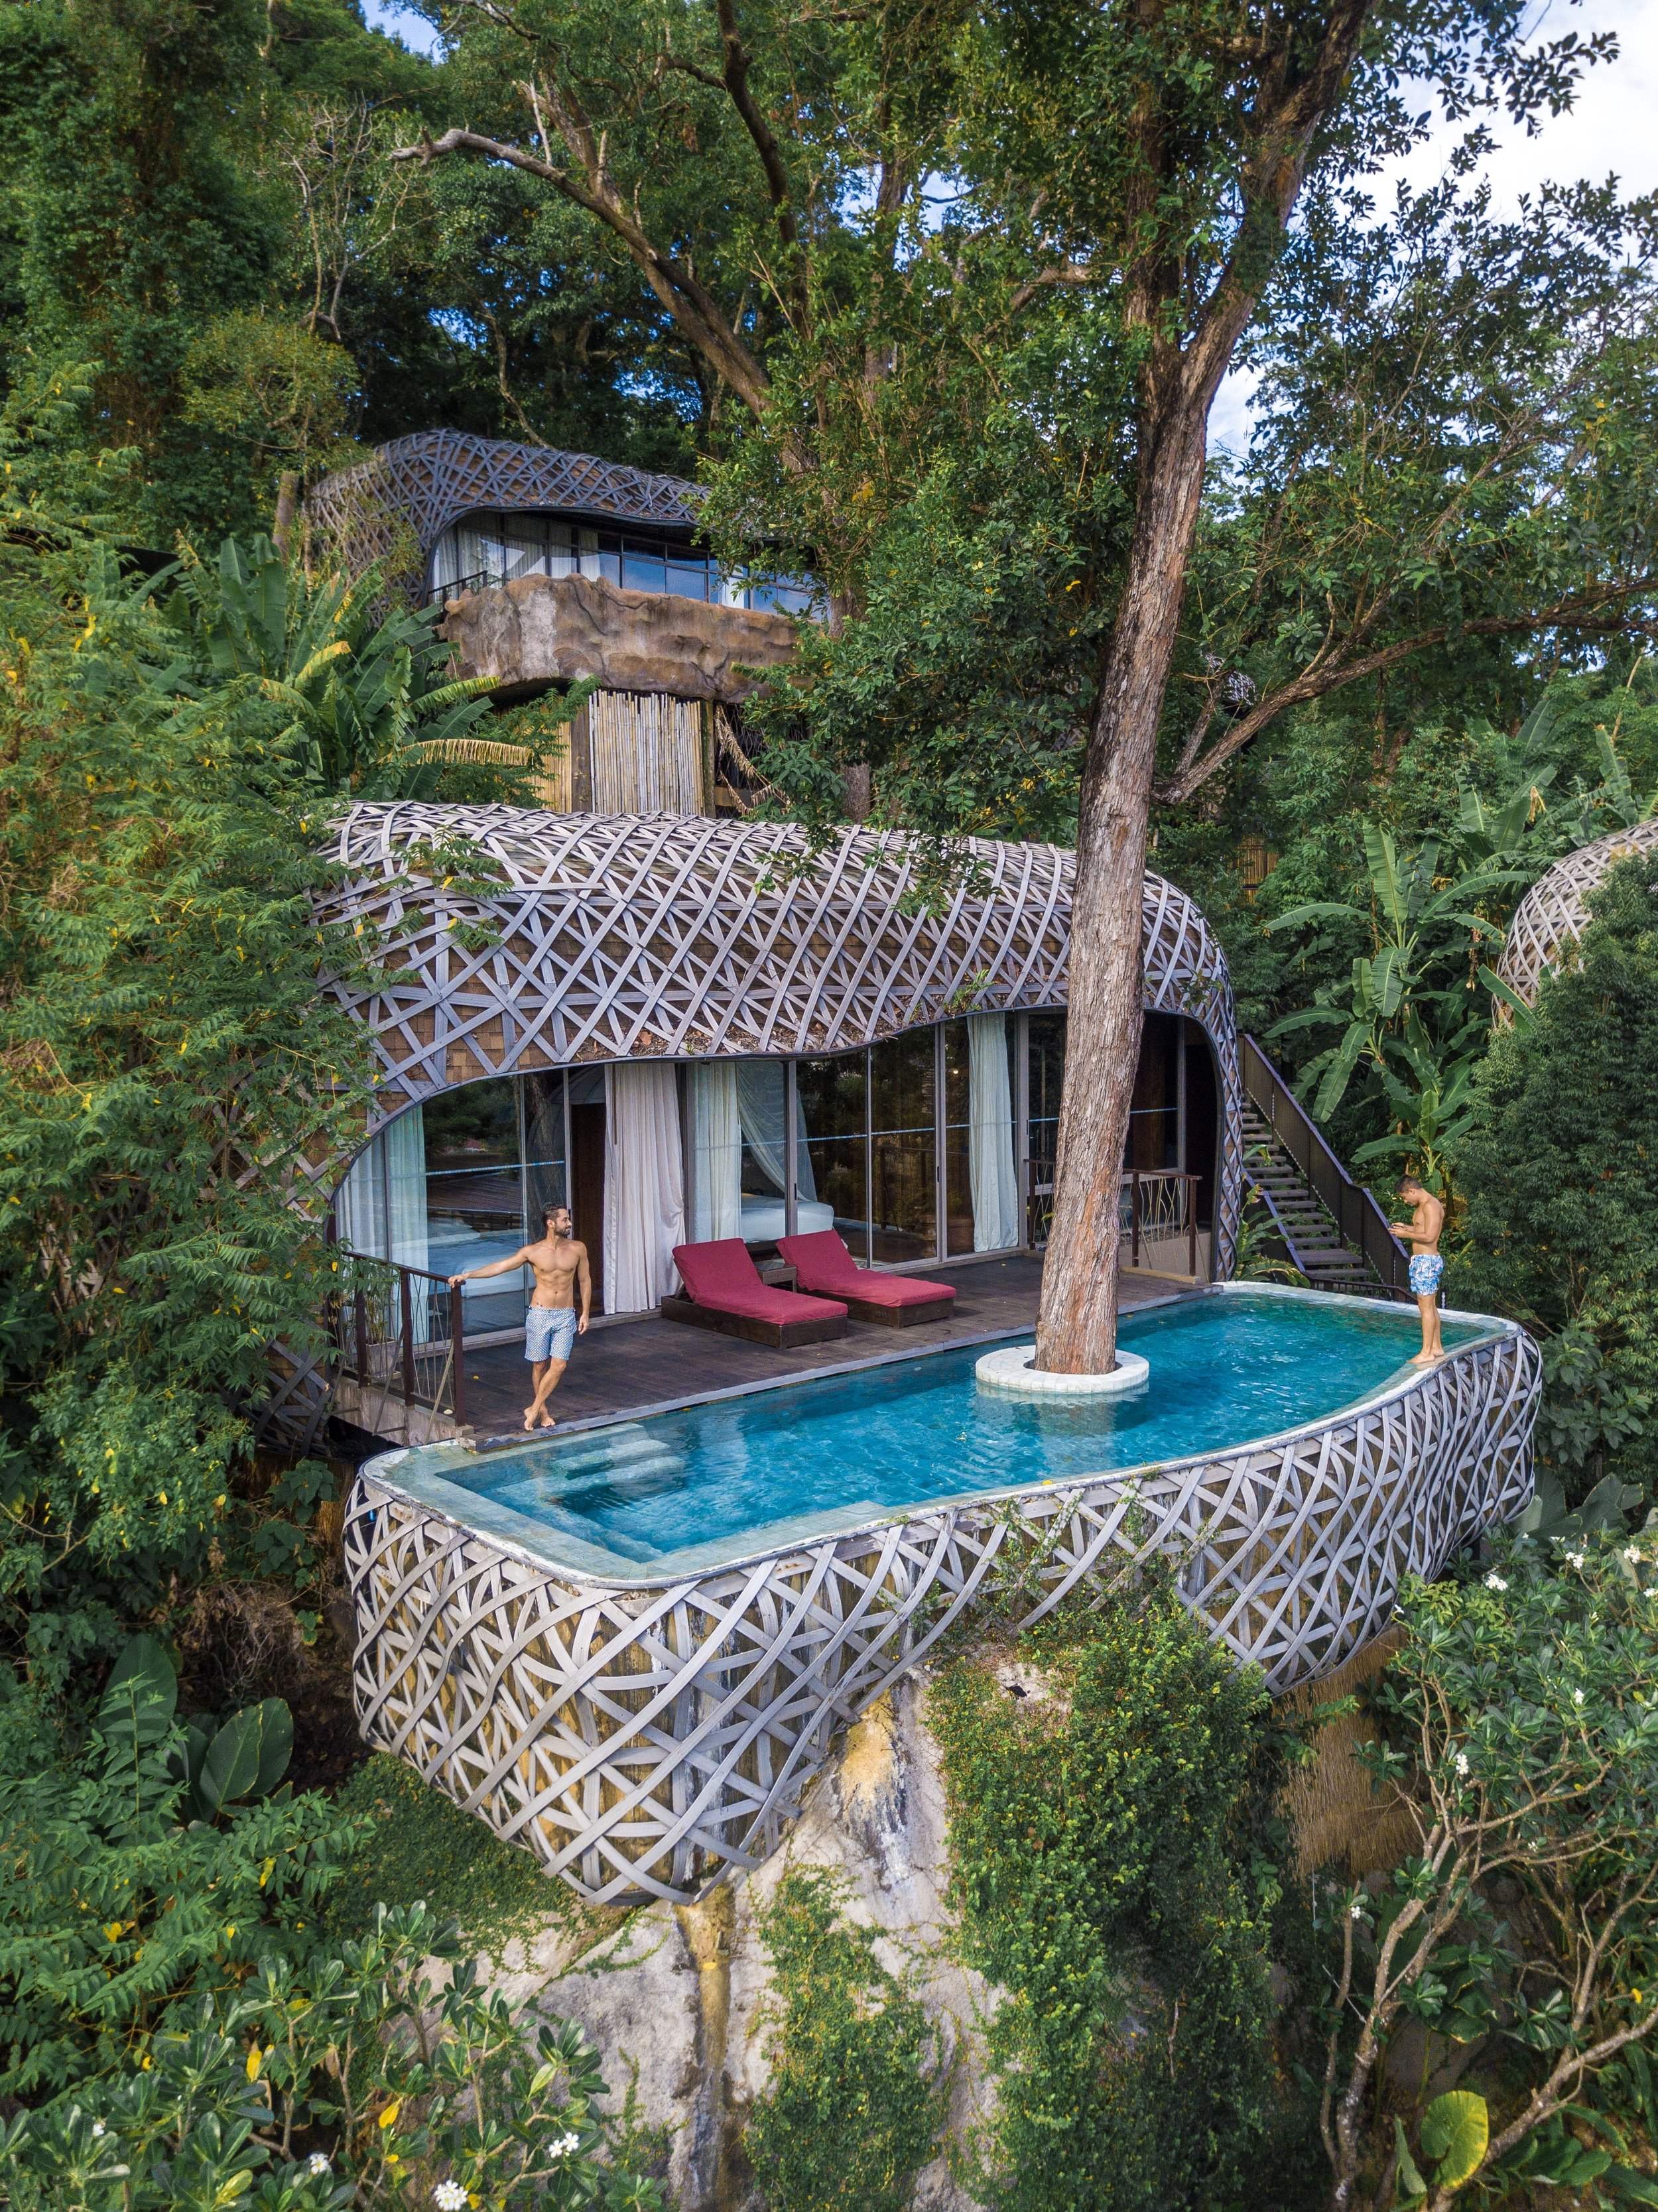  A Bird's Nest Villa talvez seja a mais famosa do hotel que fica localizado em meio à mata na ilha de Phuket. O design lembra um ninho de pássaro.  